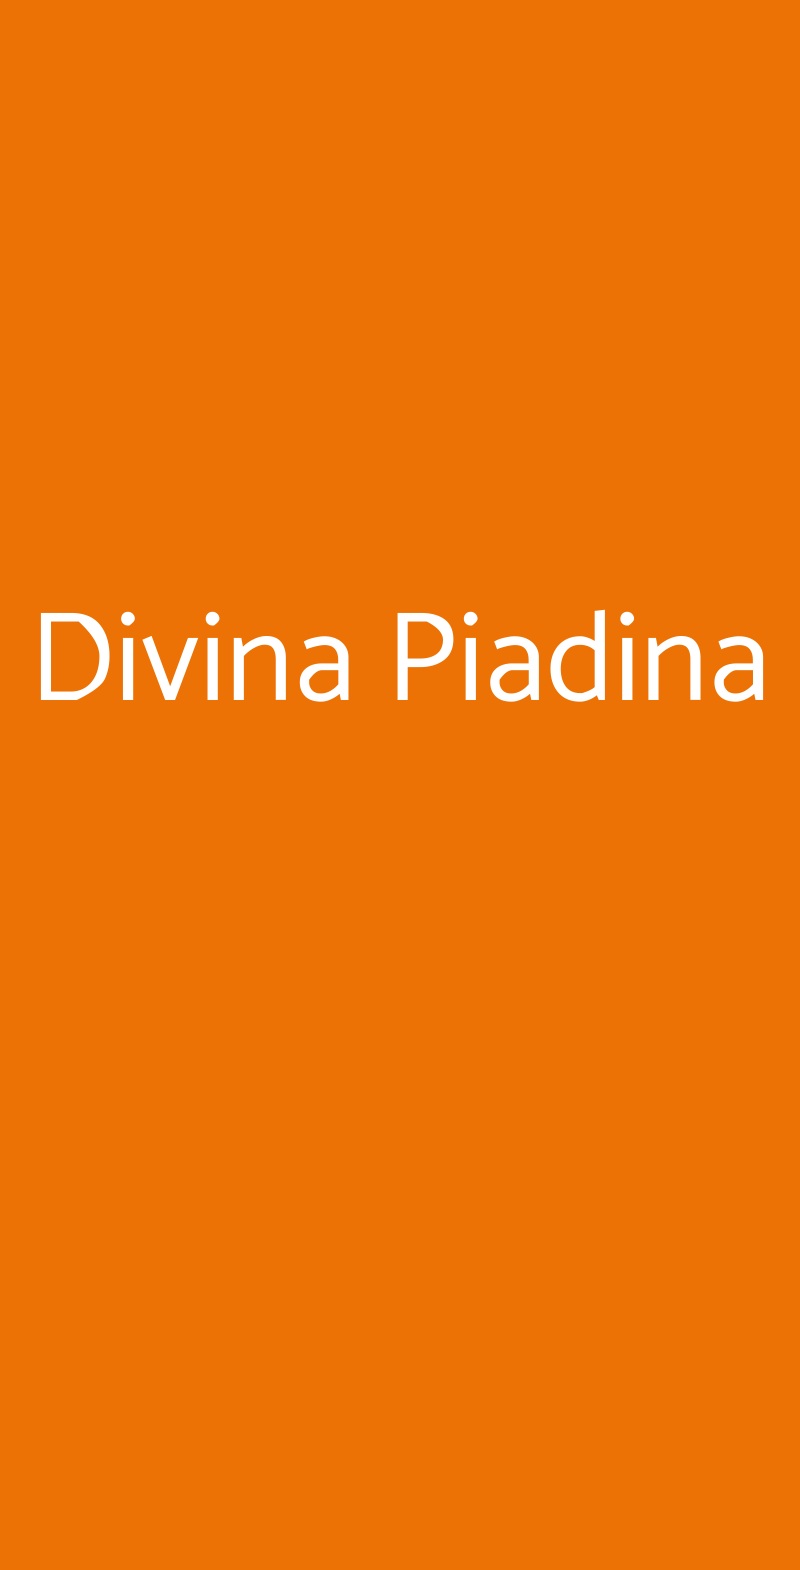 Divina Piadina Milano menù 1 pagina